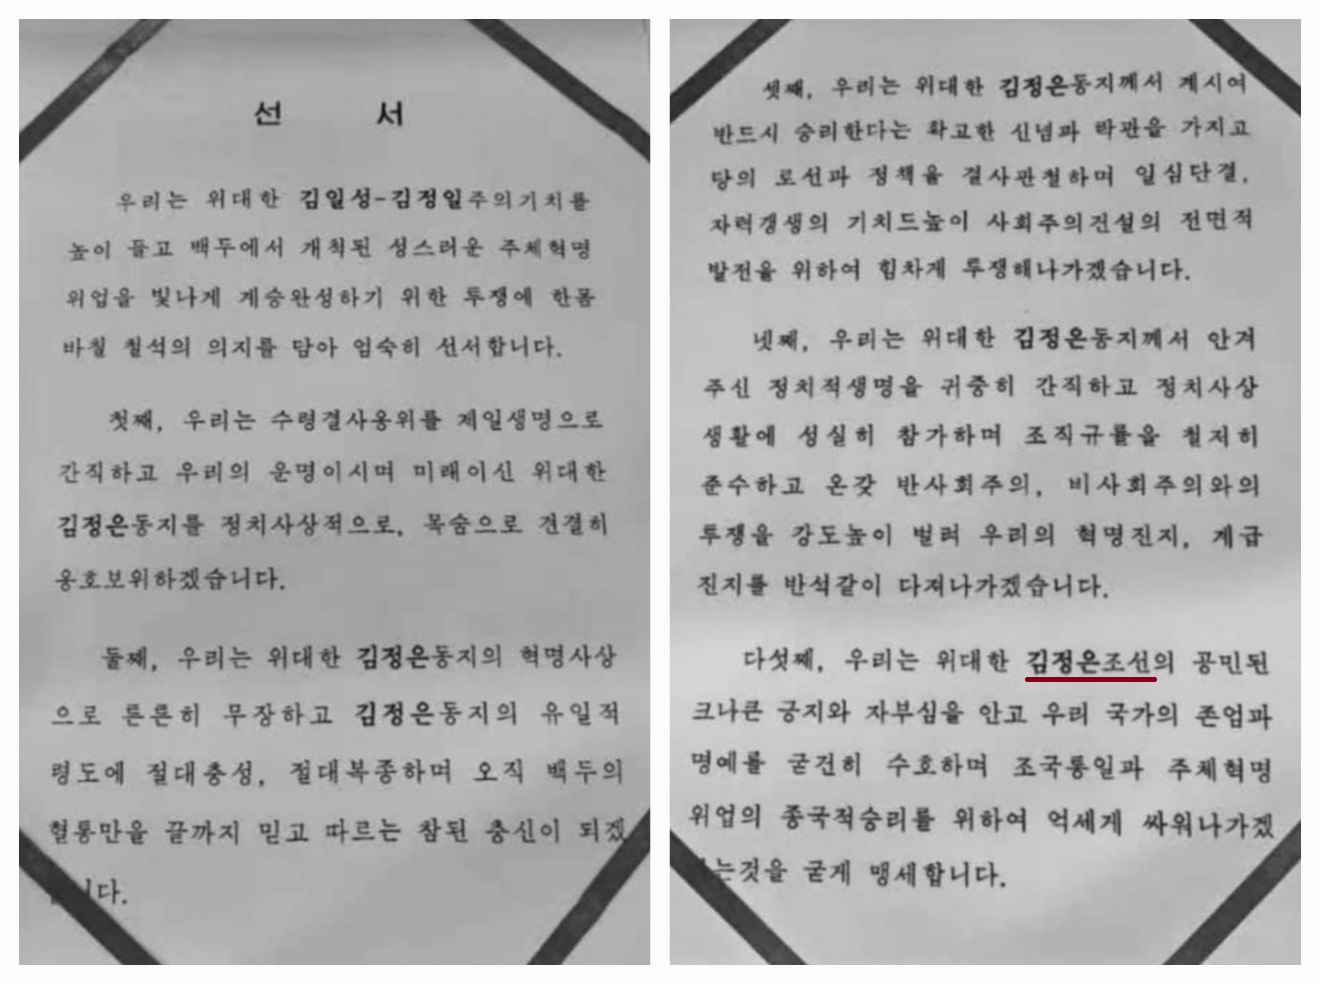  ‘샌드(SAND)연구소 영문뉴스레터’가 공개한 김정은 충성 맹세를 담은 ‘선서’문 